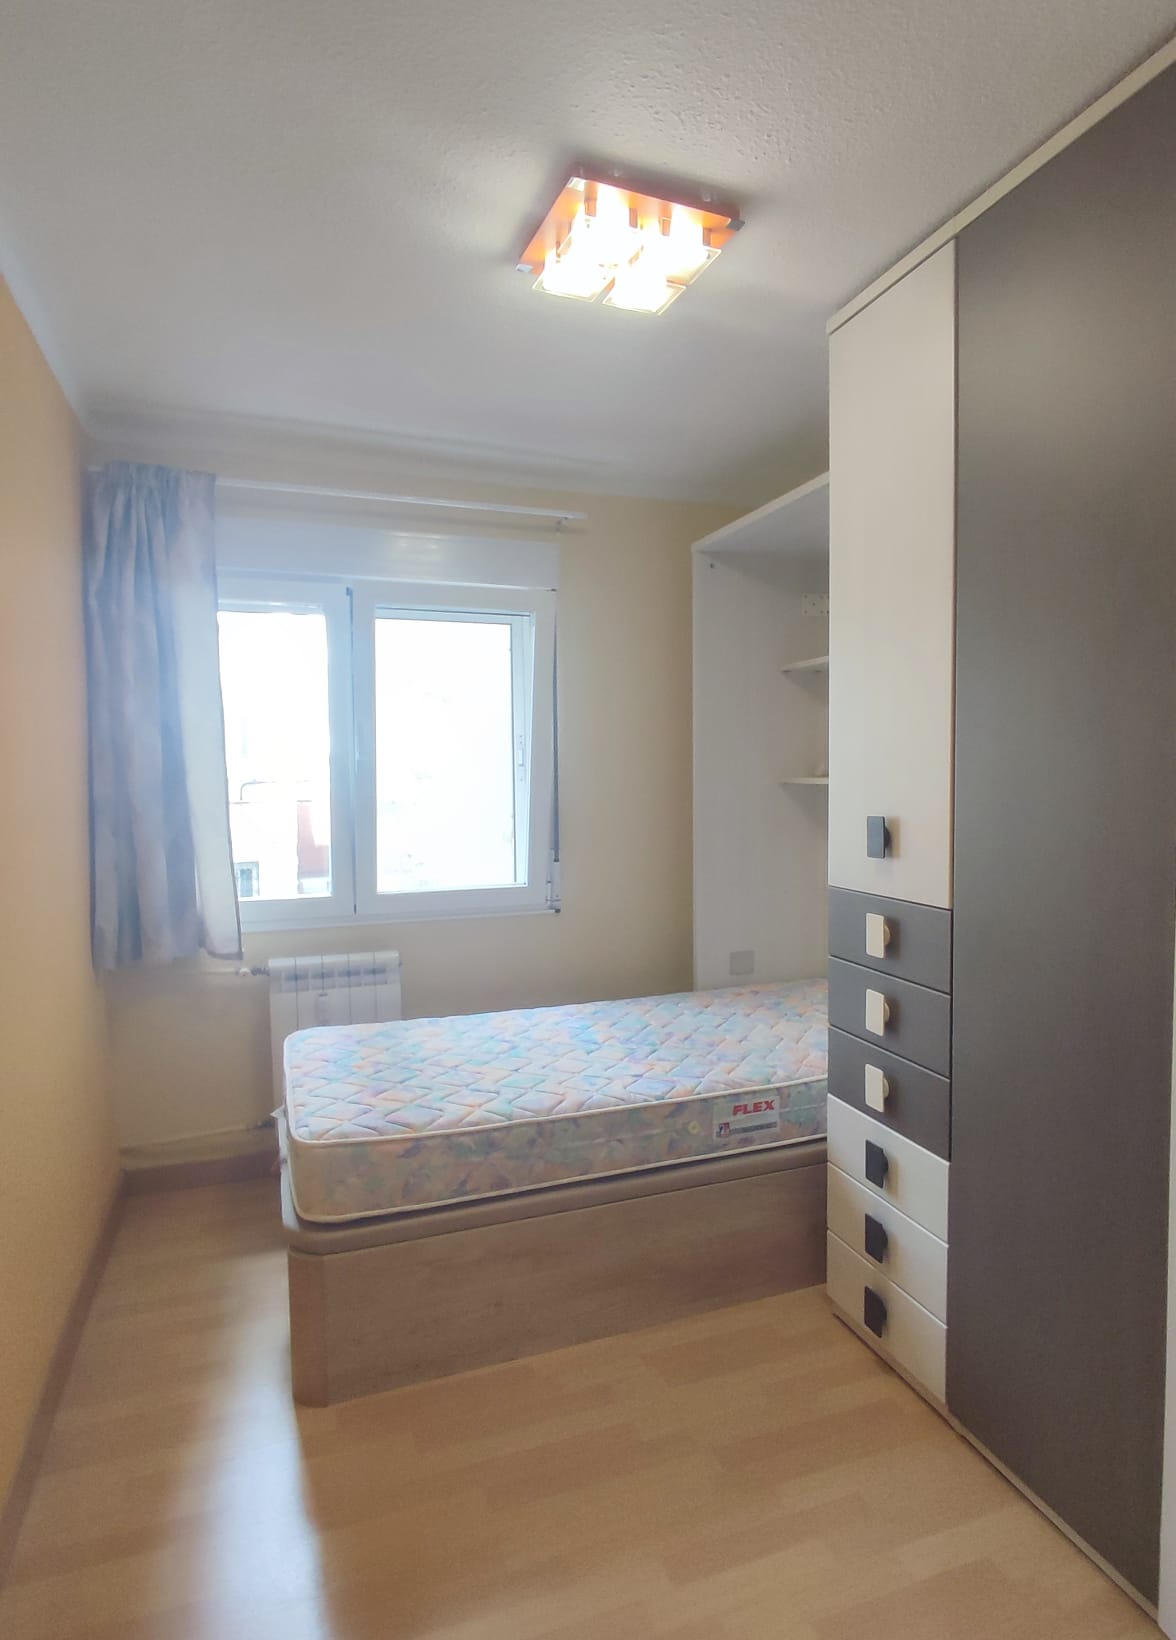 3-bedroom for rent in Burgos - bedroom